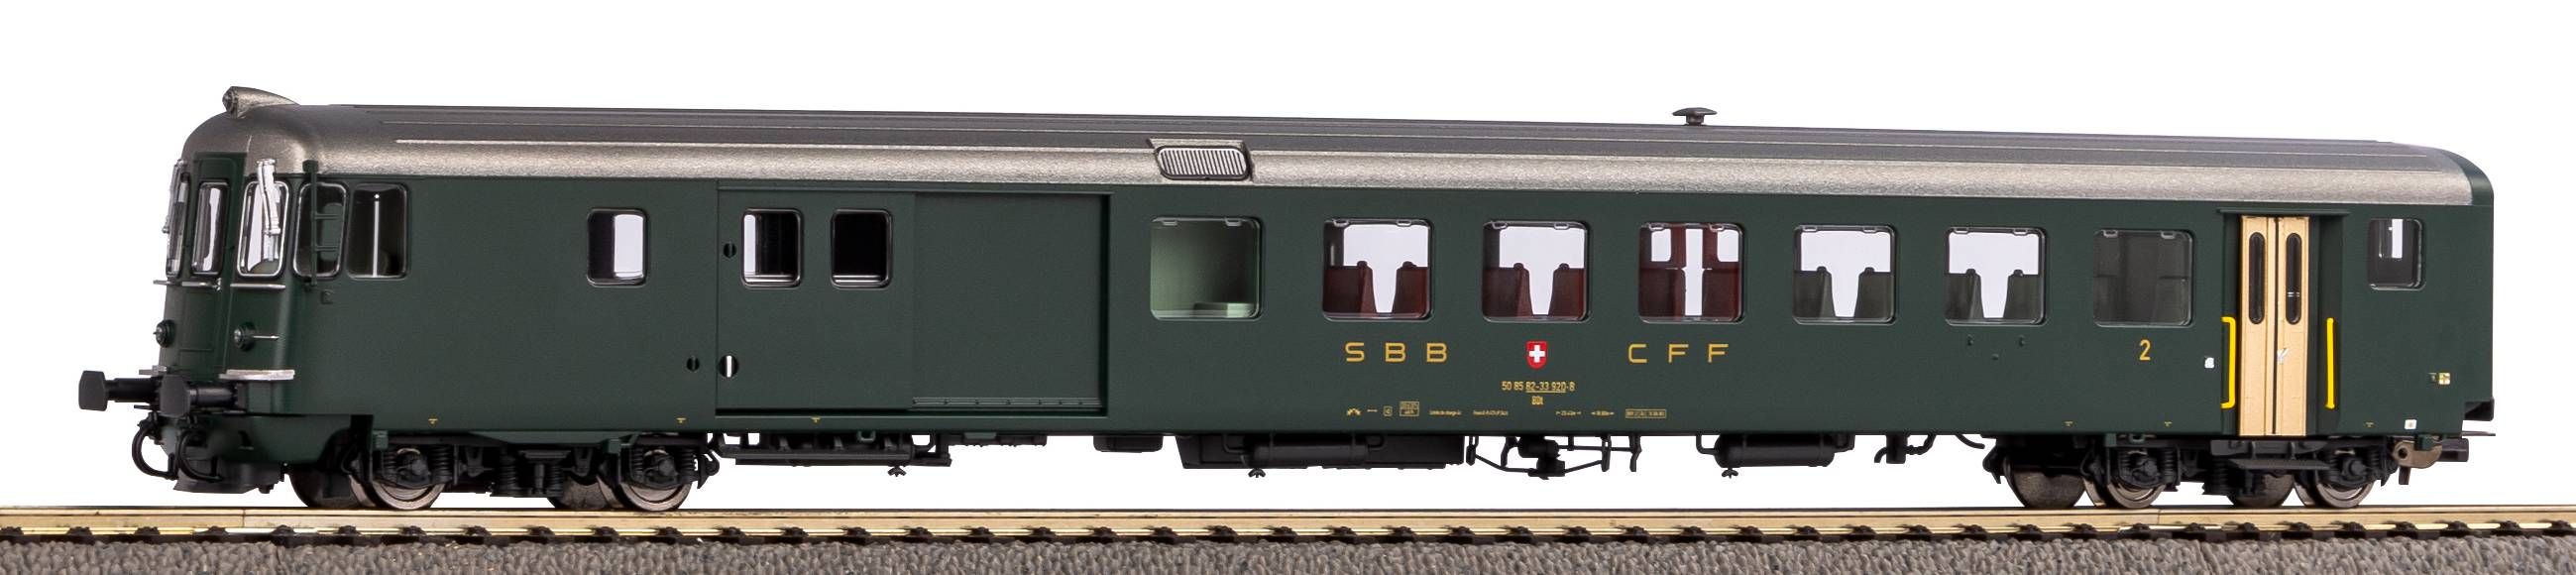 Piko H0 96753, SBB Steuerwagen BDt 914-1 EW II grün mit alter Schrift, AC